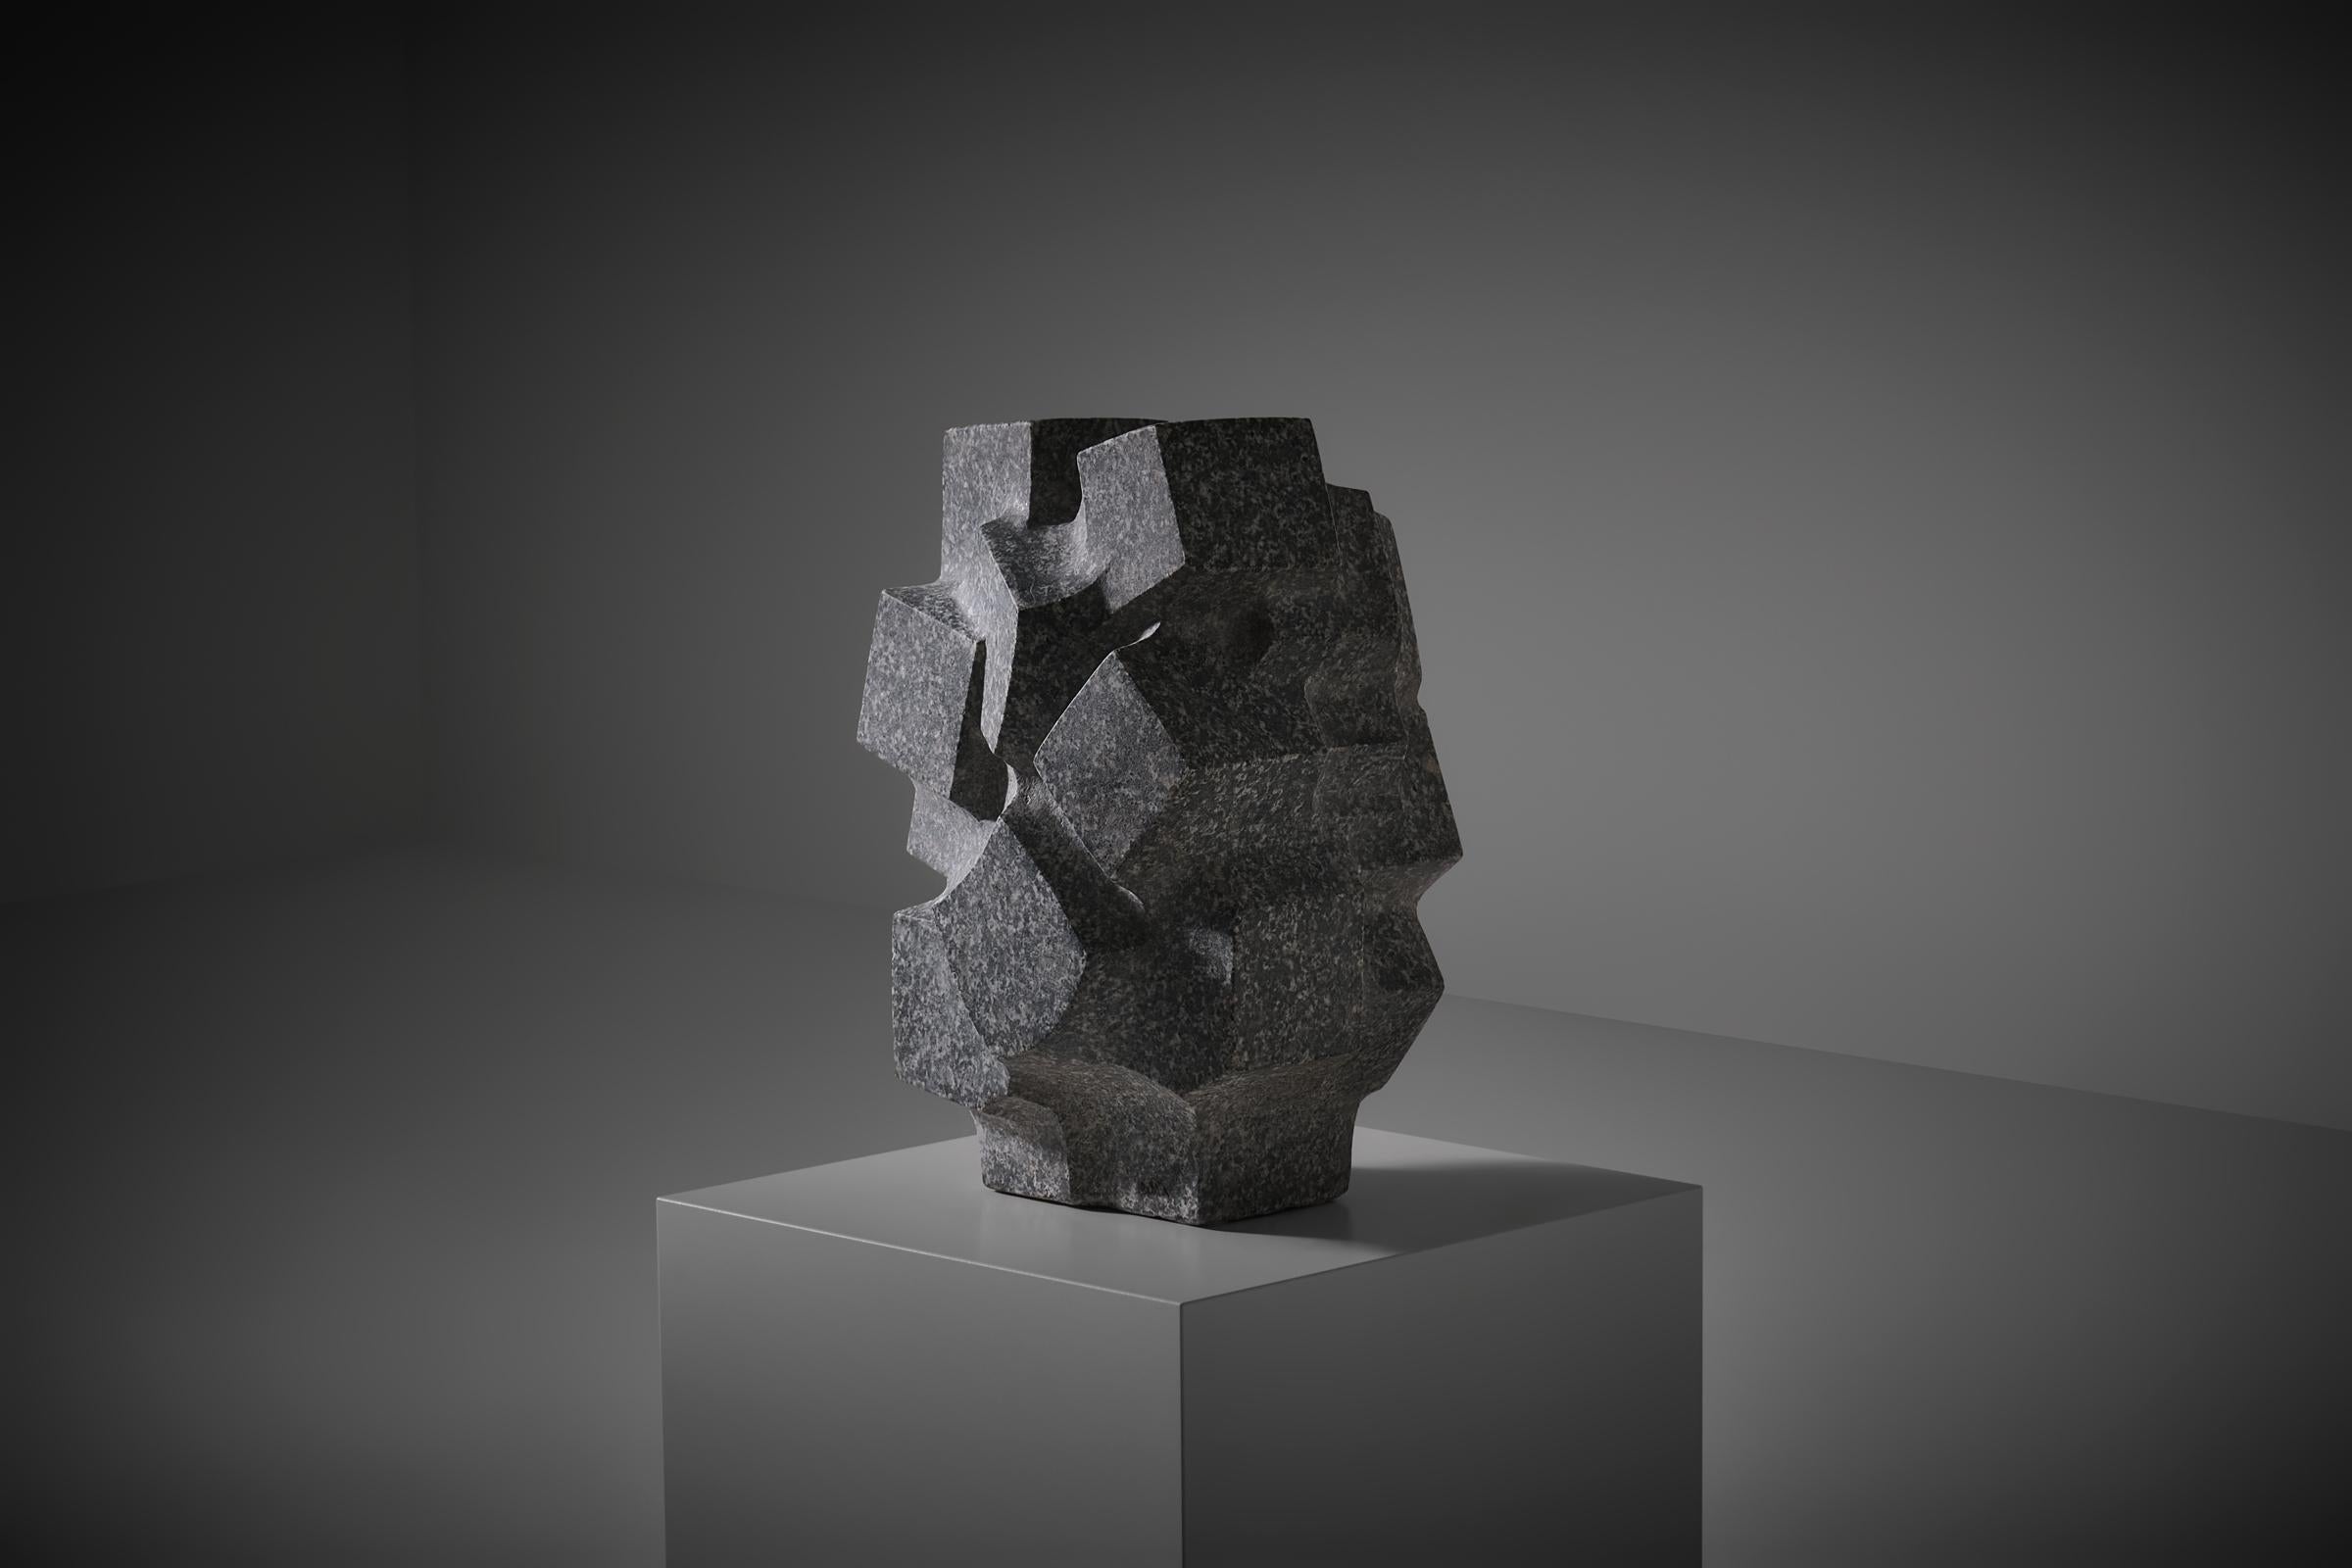 Abstract stone sculpture ‘Metropolis 4’ by Vittorio di Muzio (1924 - 2014), Italy 1986. Di Muzio studied sculpture at the l’Accademia delle Belle Arti di Brera in Milan and was trained by Maestro Marino Marini, he graduated in 1958. This work is